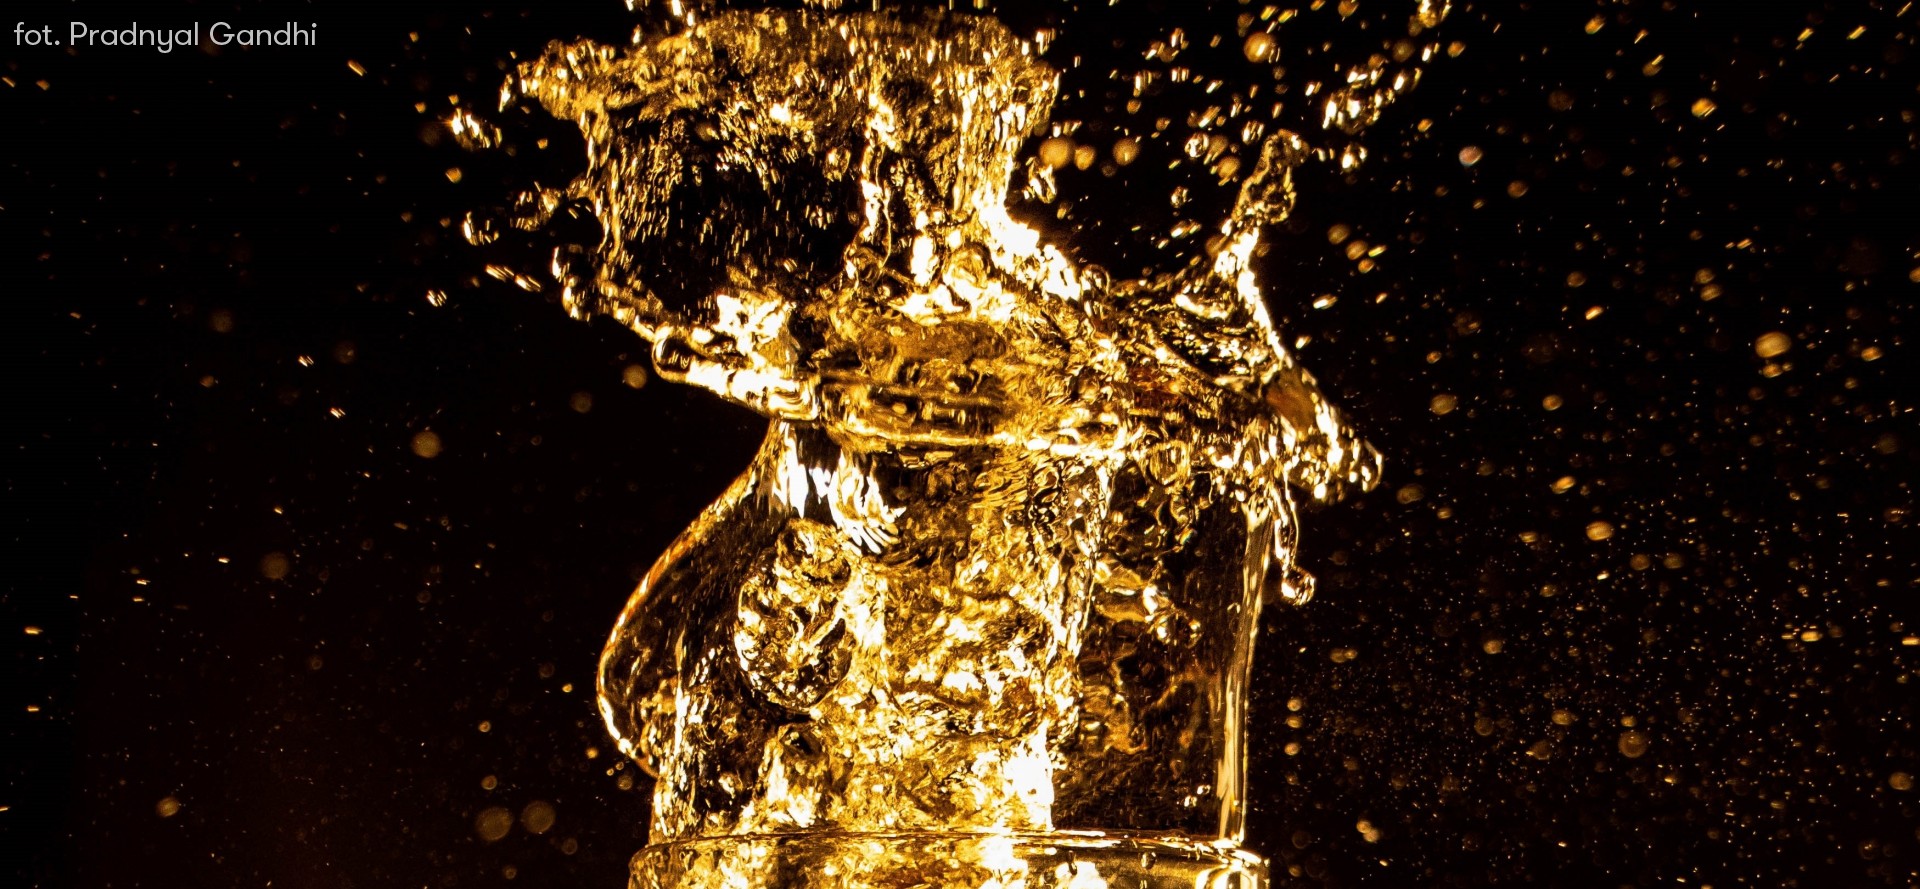 Artystyczne zdjęcie piwa w złotym kolorze wychlapującego się z kufla